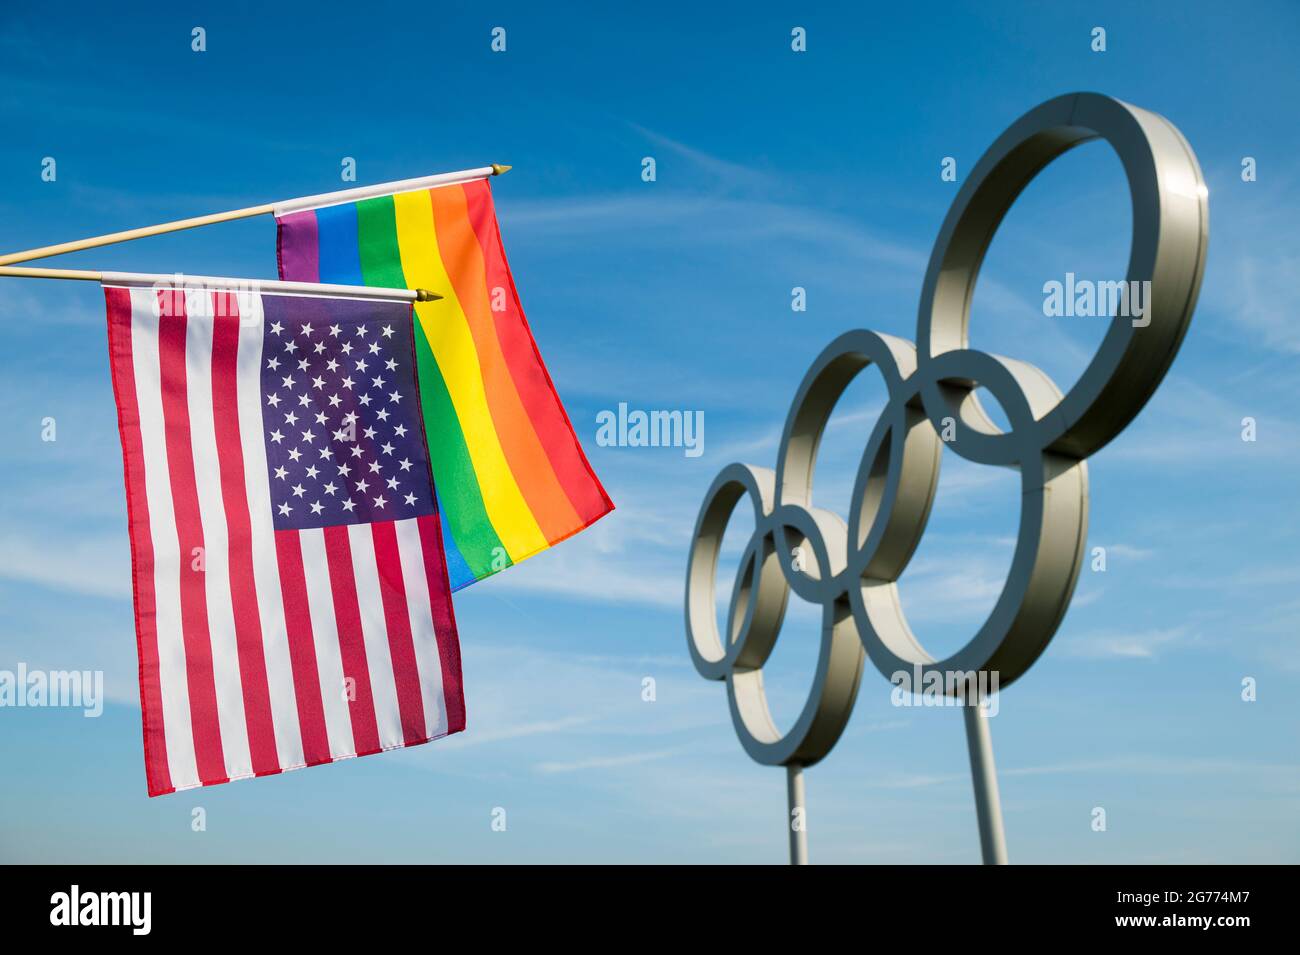 RIO DE JANEIRO - 4 MAI 2016 : un drapeau de fierté gay de couleur arc-en-ciel est accroché à un drapeau britannique de l'Union devant les anneaux olympiques contre le bleu vif Banque D'Images